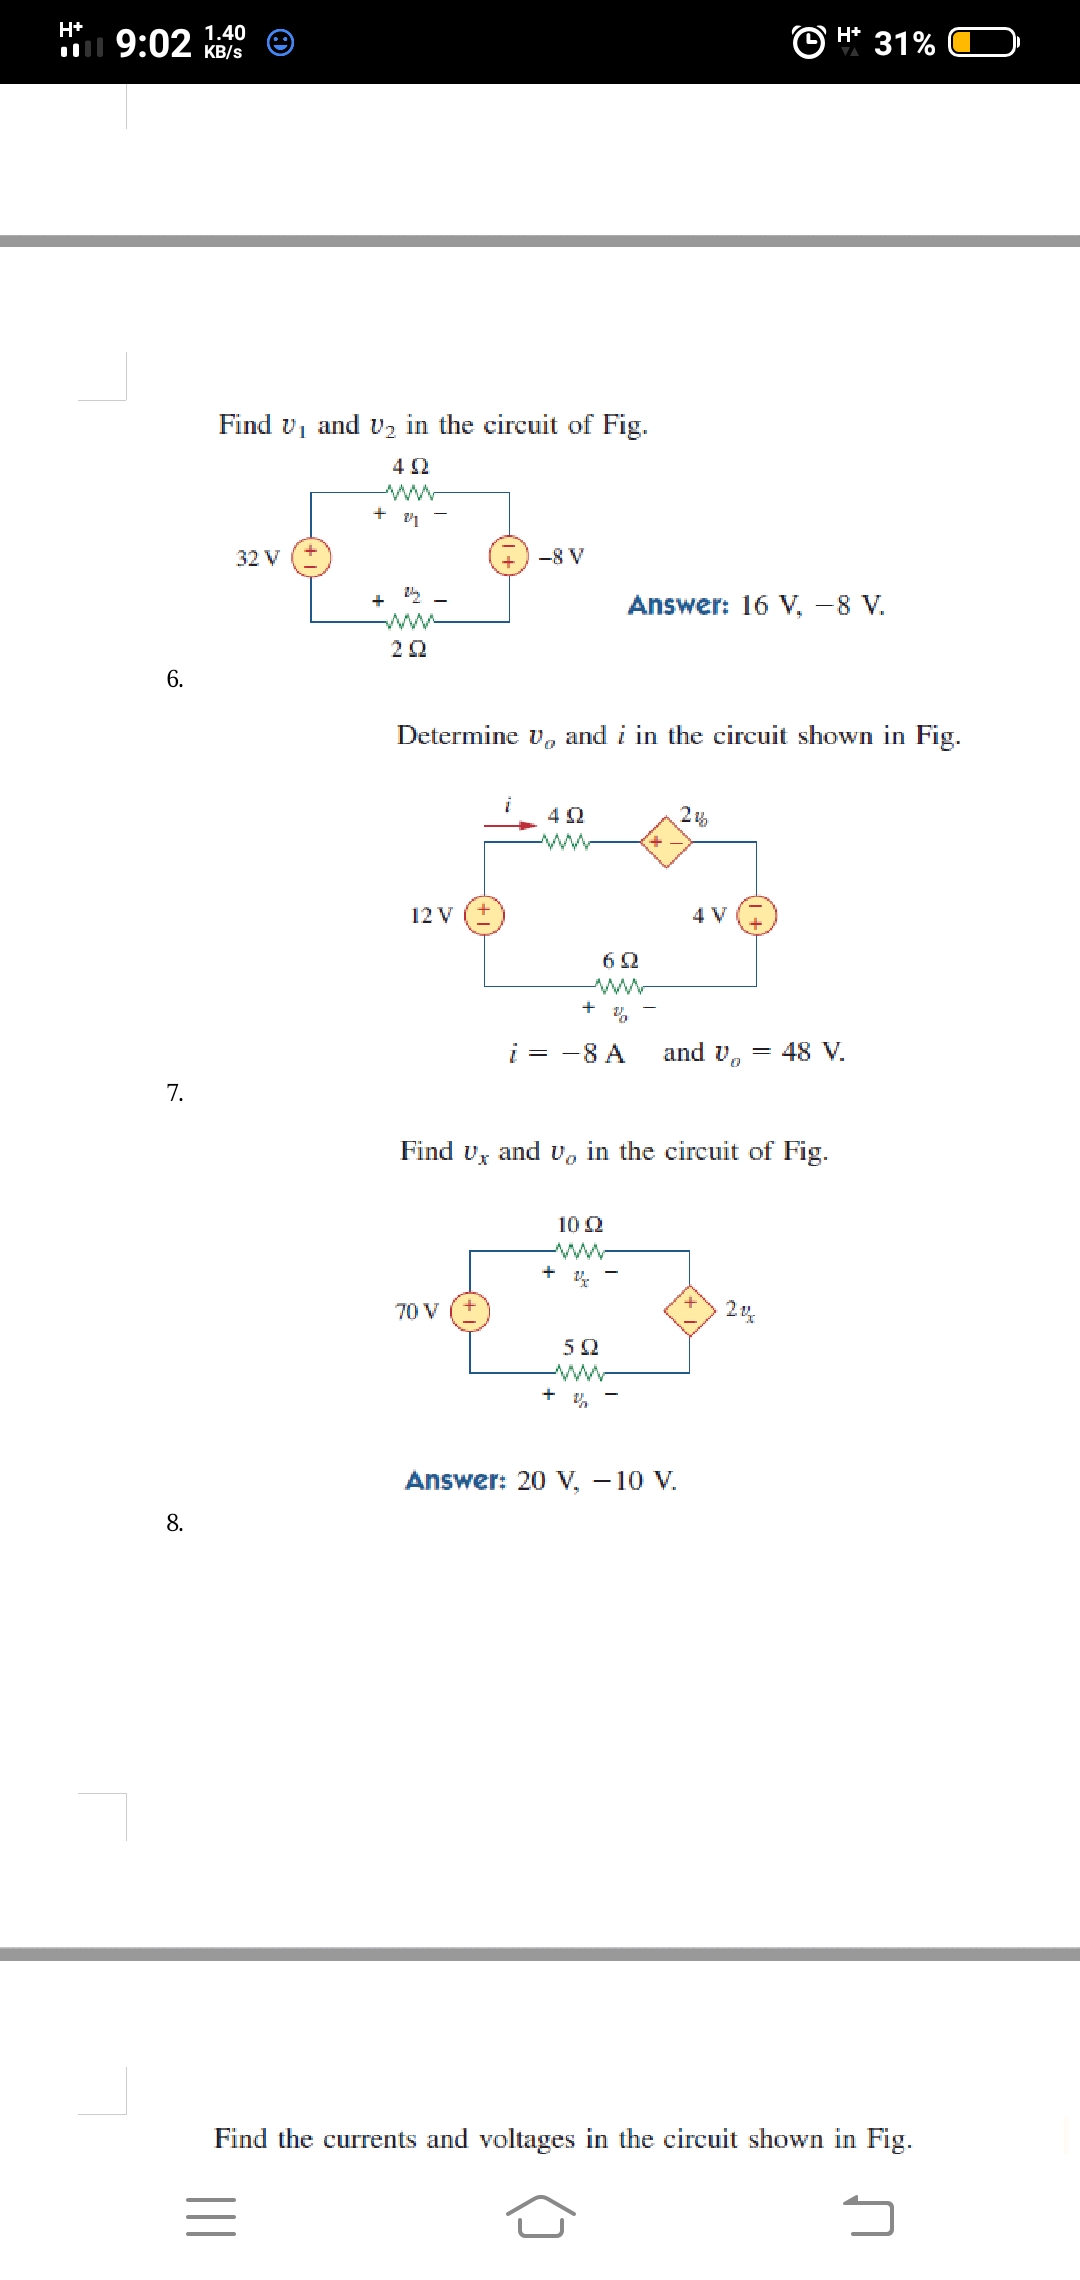 Find v, and v2 in the circuit of Fig.
+ v1
32 V
-8 V
+ 2
ww
Answer: 16 V, -8 V.
6.
